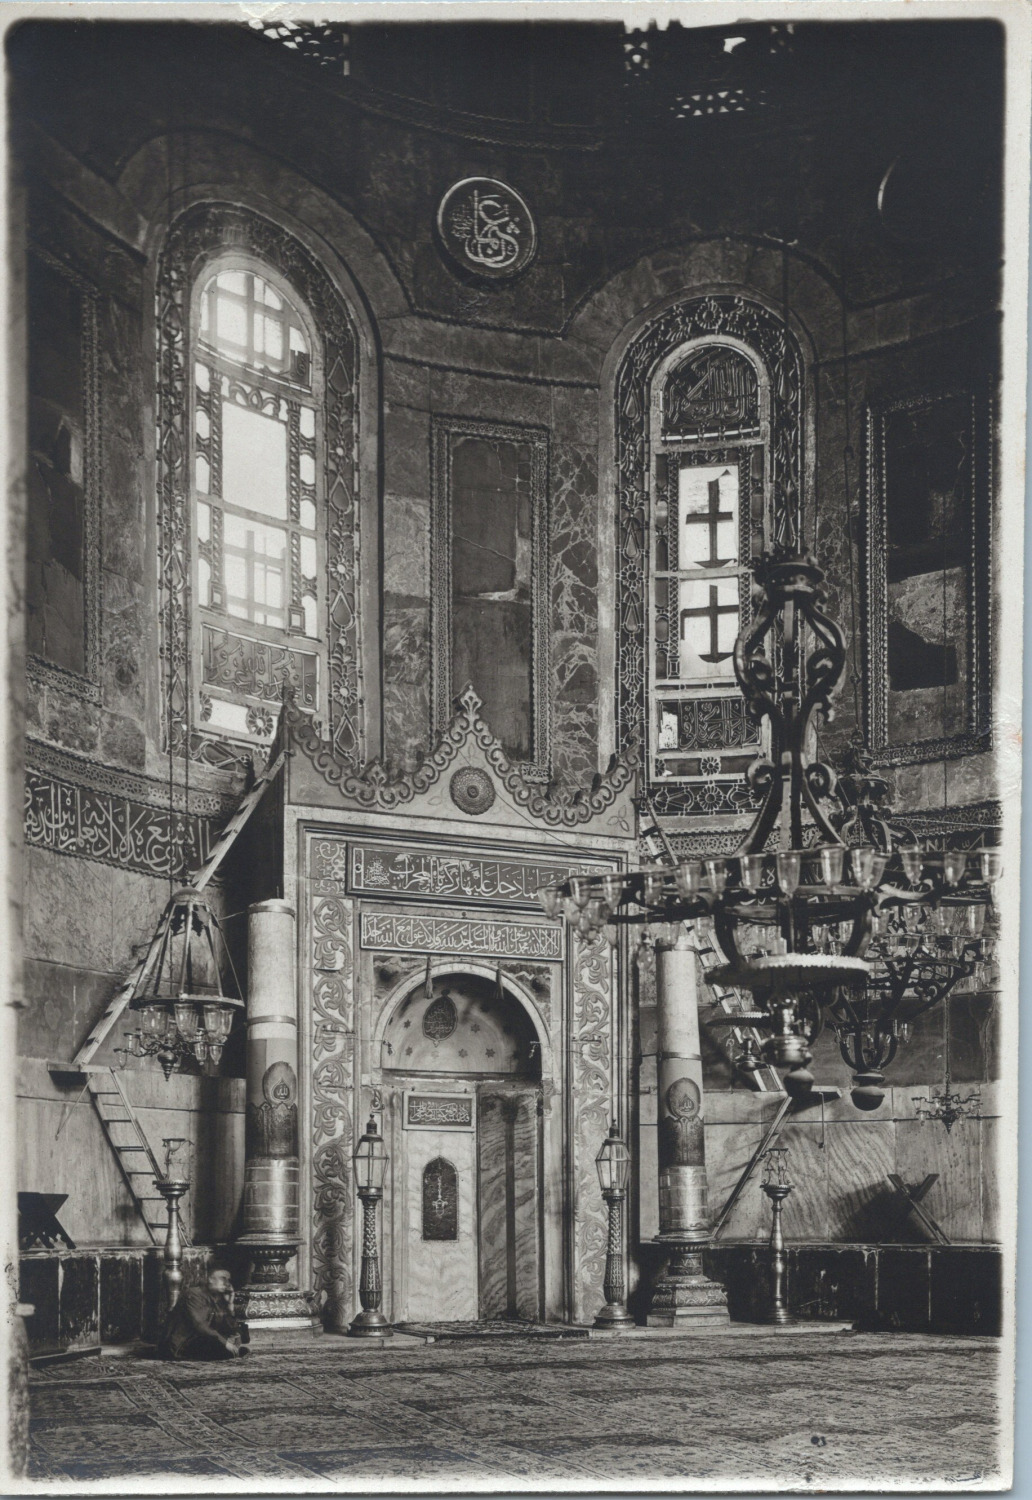 Constantinople, Hagia Sophia Interior, Vintage Print, 1919 Vintage Print